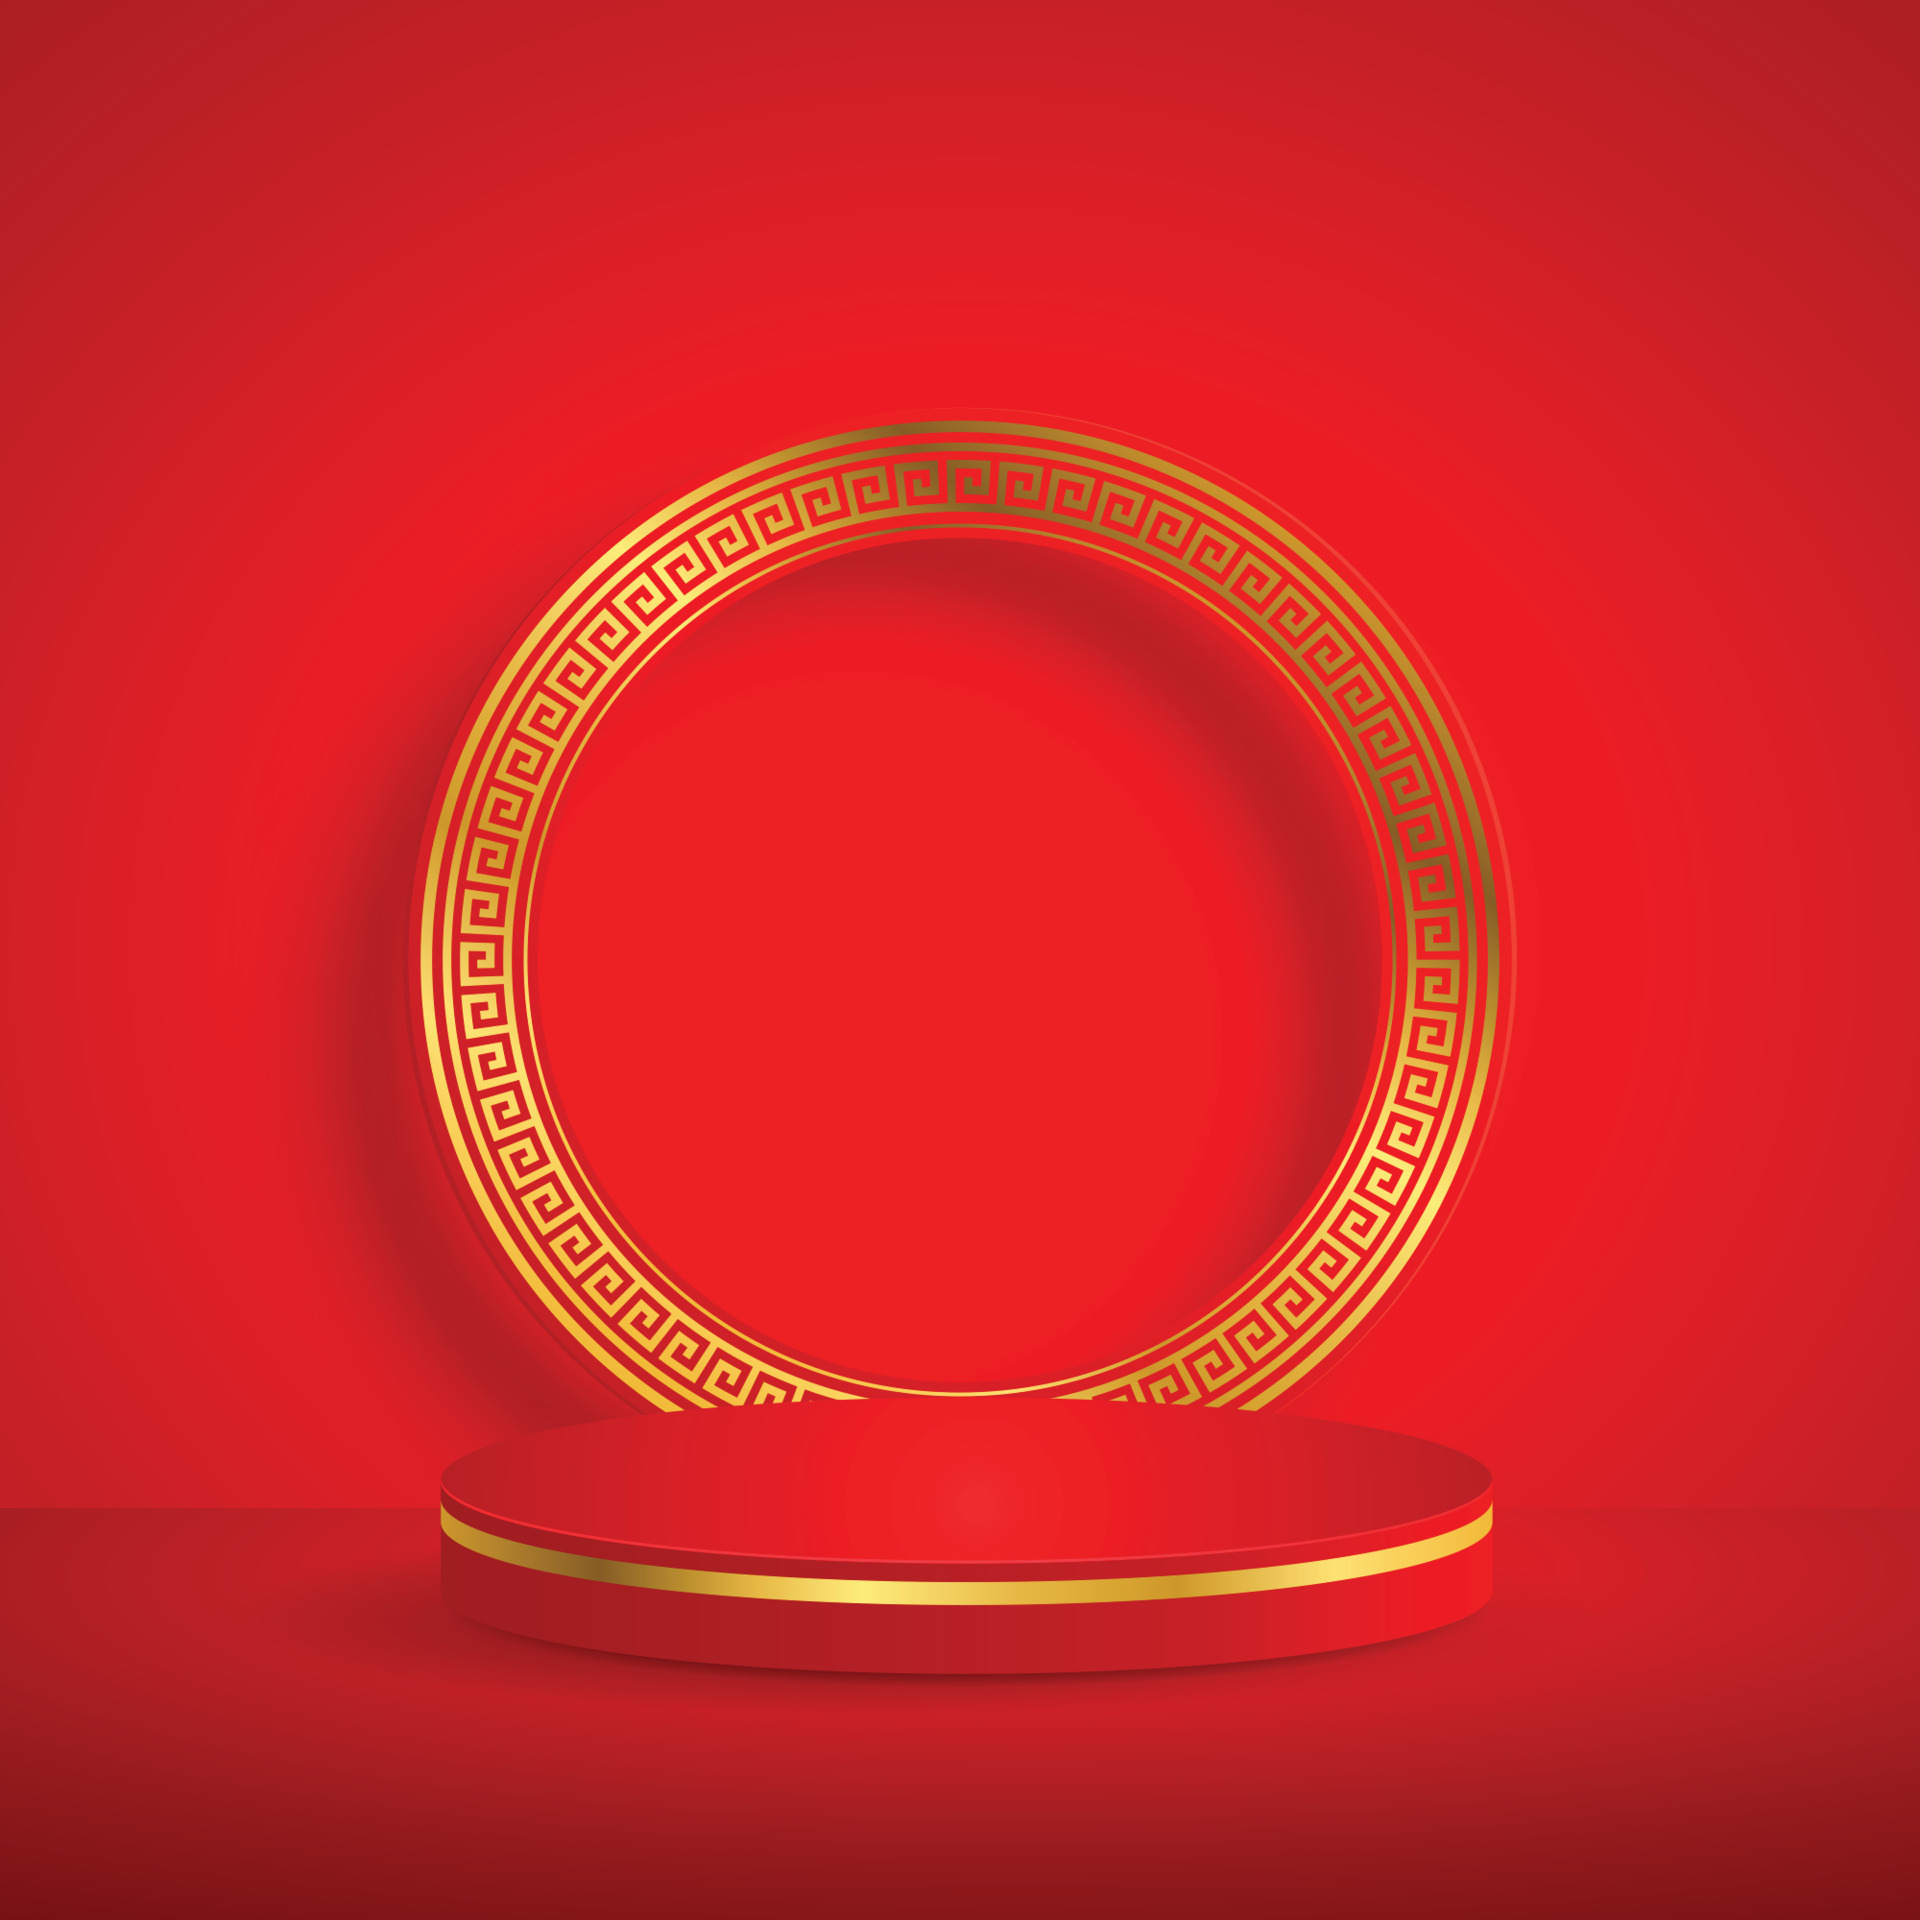 Sân khấu tròn với hoa văn vàng phong cách Trung Quốc: Bức hình với sân khấu tròn và hoa văn vàng sẽ giúp bạn tạo nên một không gian đáng nhớ và đầy ấn tượng. Với thiết kế độc đáo và chỉn chu, bức tranh sẽ khiến bạn ngạc nhiên và thích thú. Hãy cùng tìm hiểu thêm về phong cách Trung Quốc qua hình ảnh này.